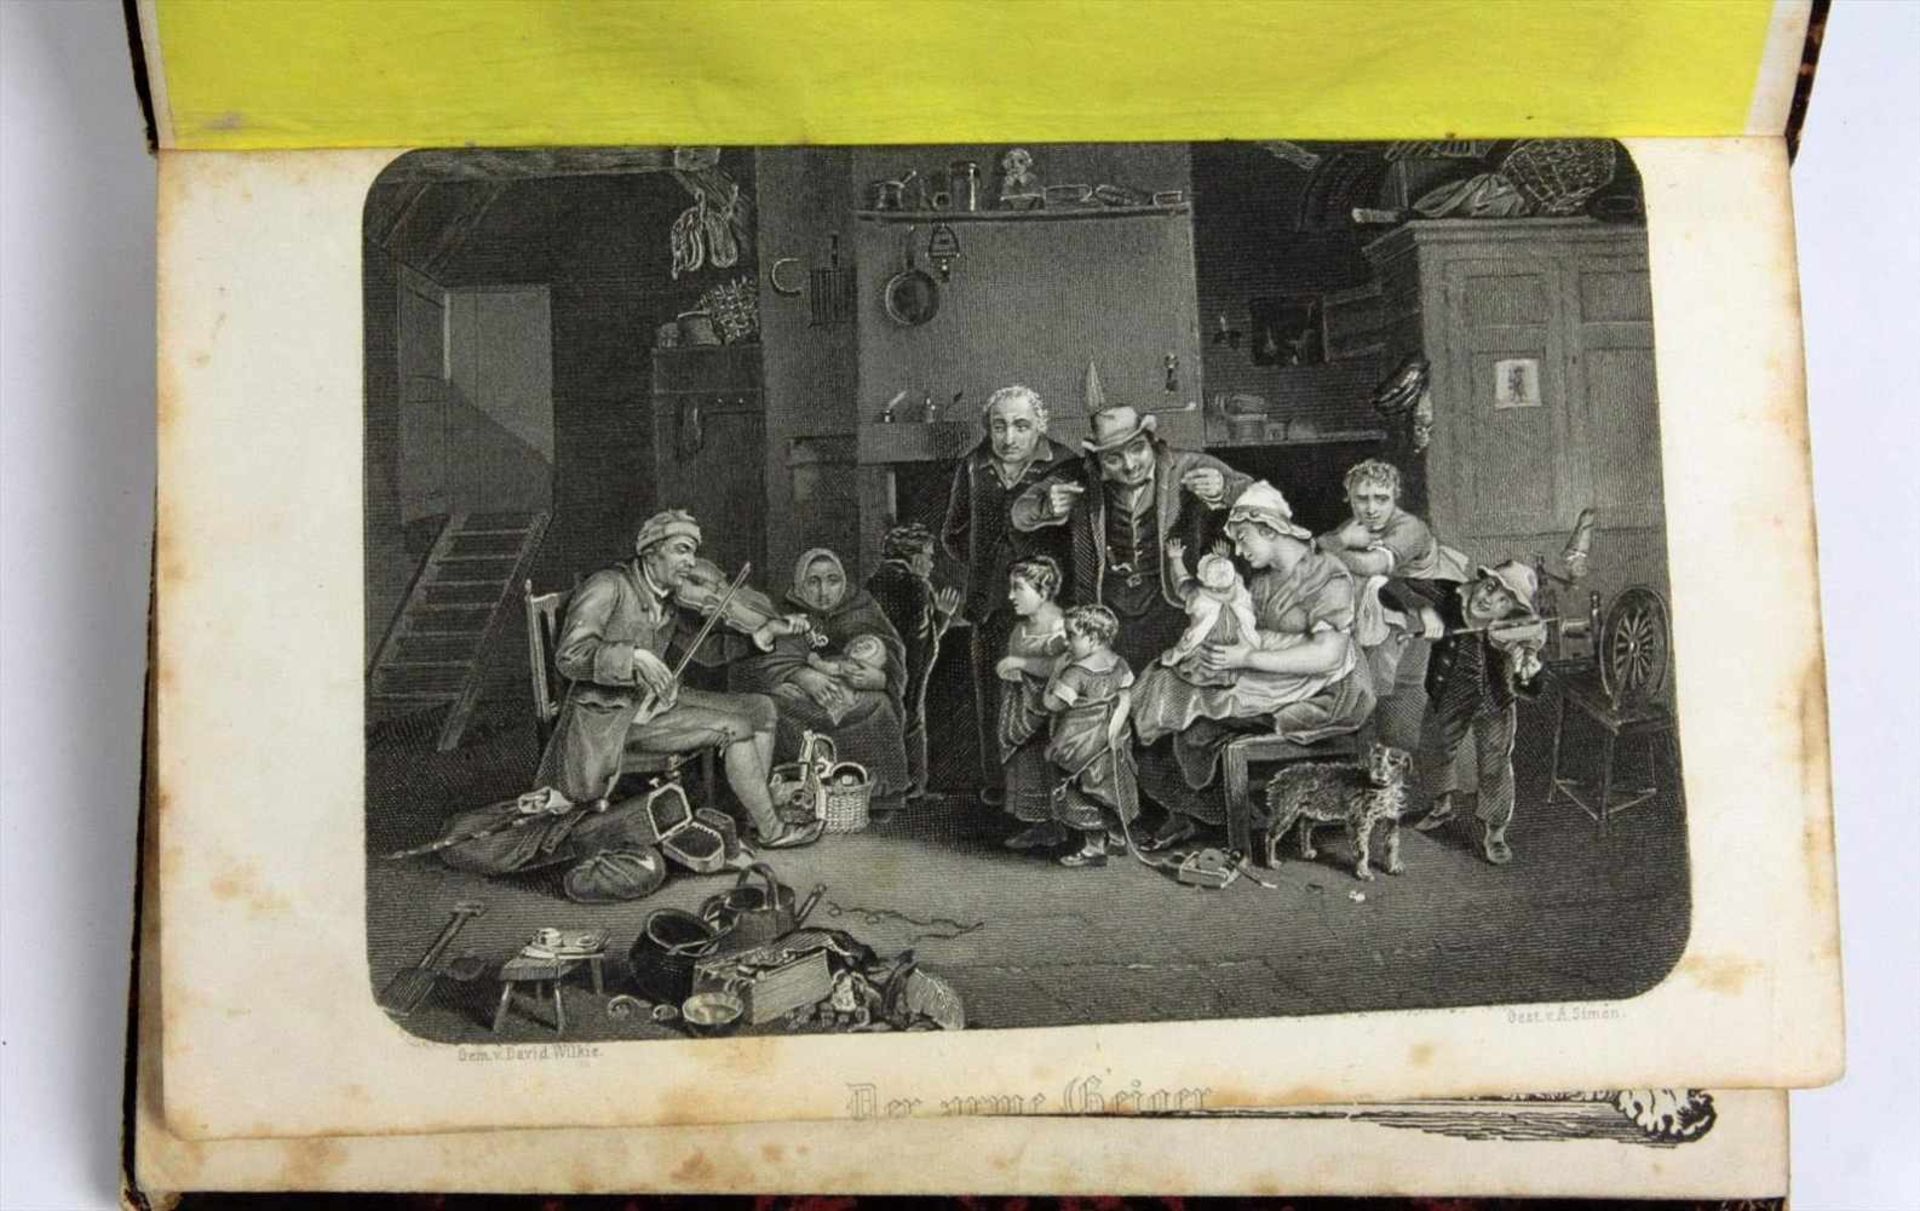 Volks-Kalender für 1853 Hrsg. von Karl Steffens. Mit 8 Stahlstichen, davon 1 von Theodor Hosemann - Bild 2 aus 2